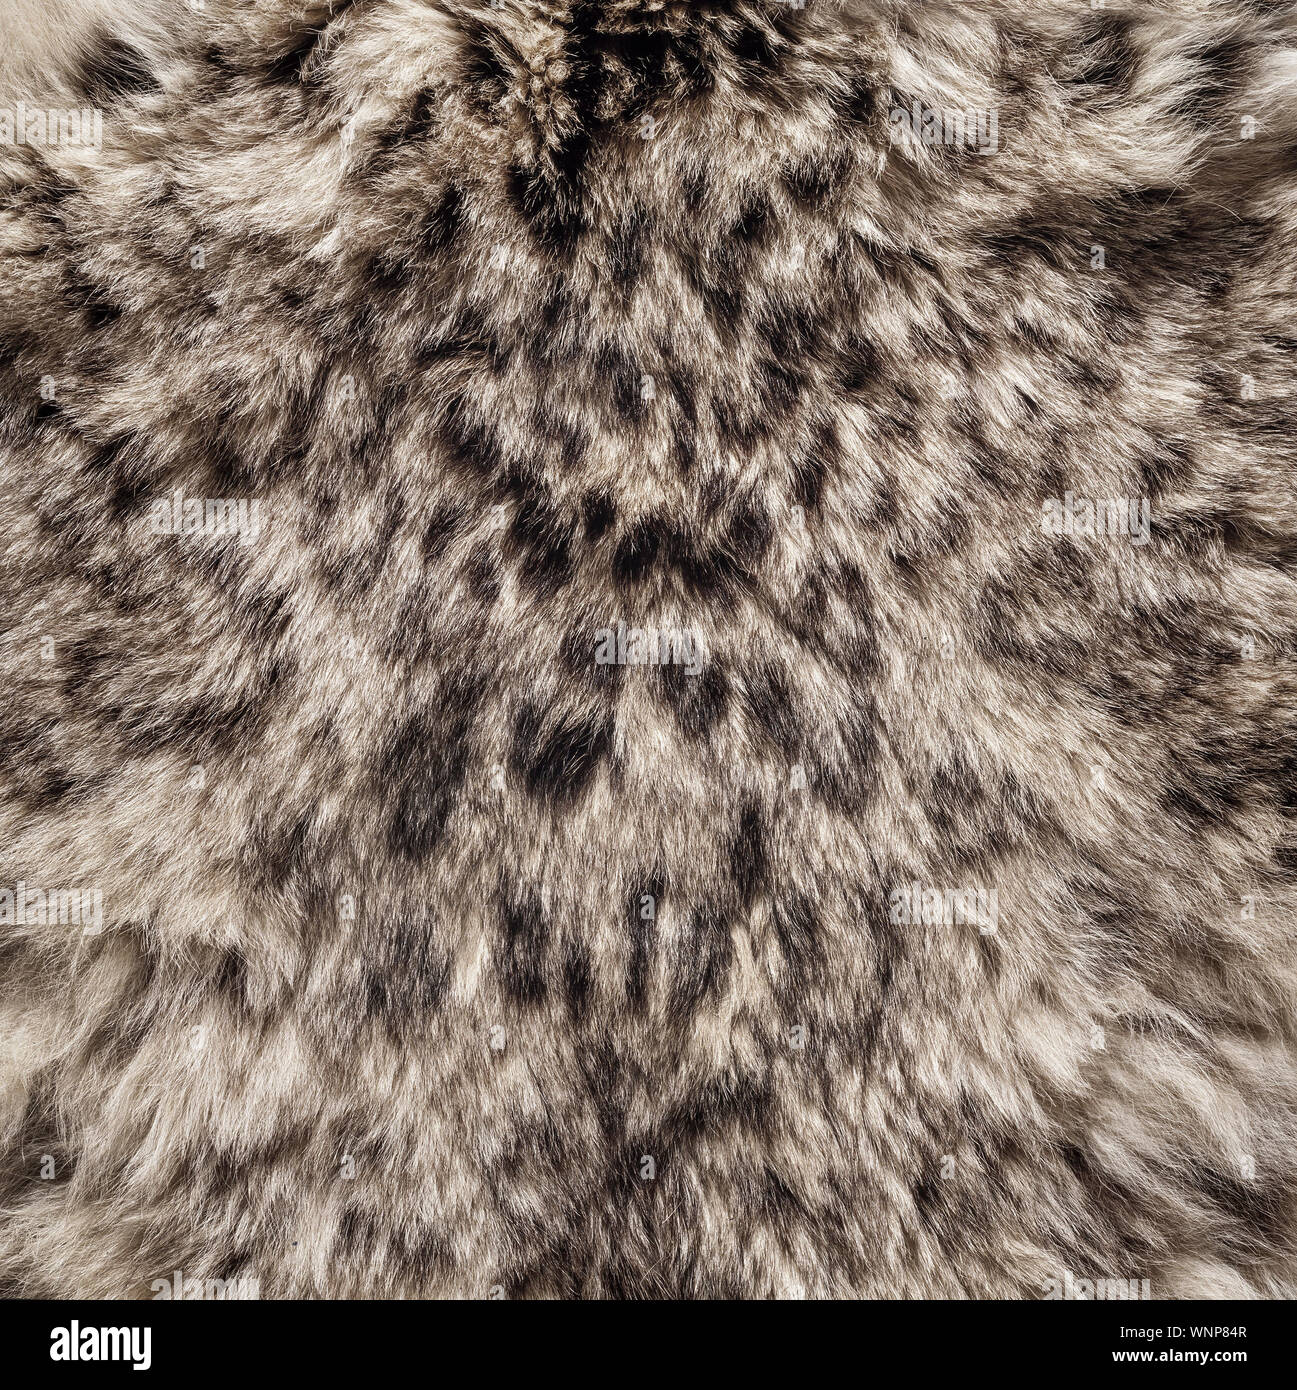 Snow Leopard, peau de fourrure caractéristique montrant les marquages, Panthera unica Banque D'Images